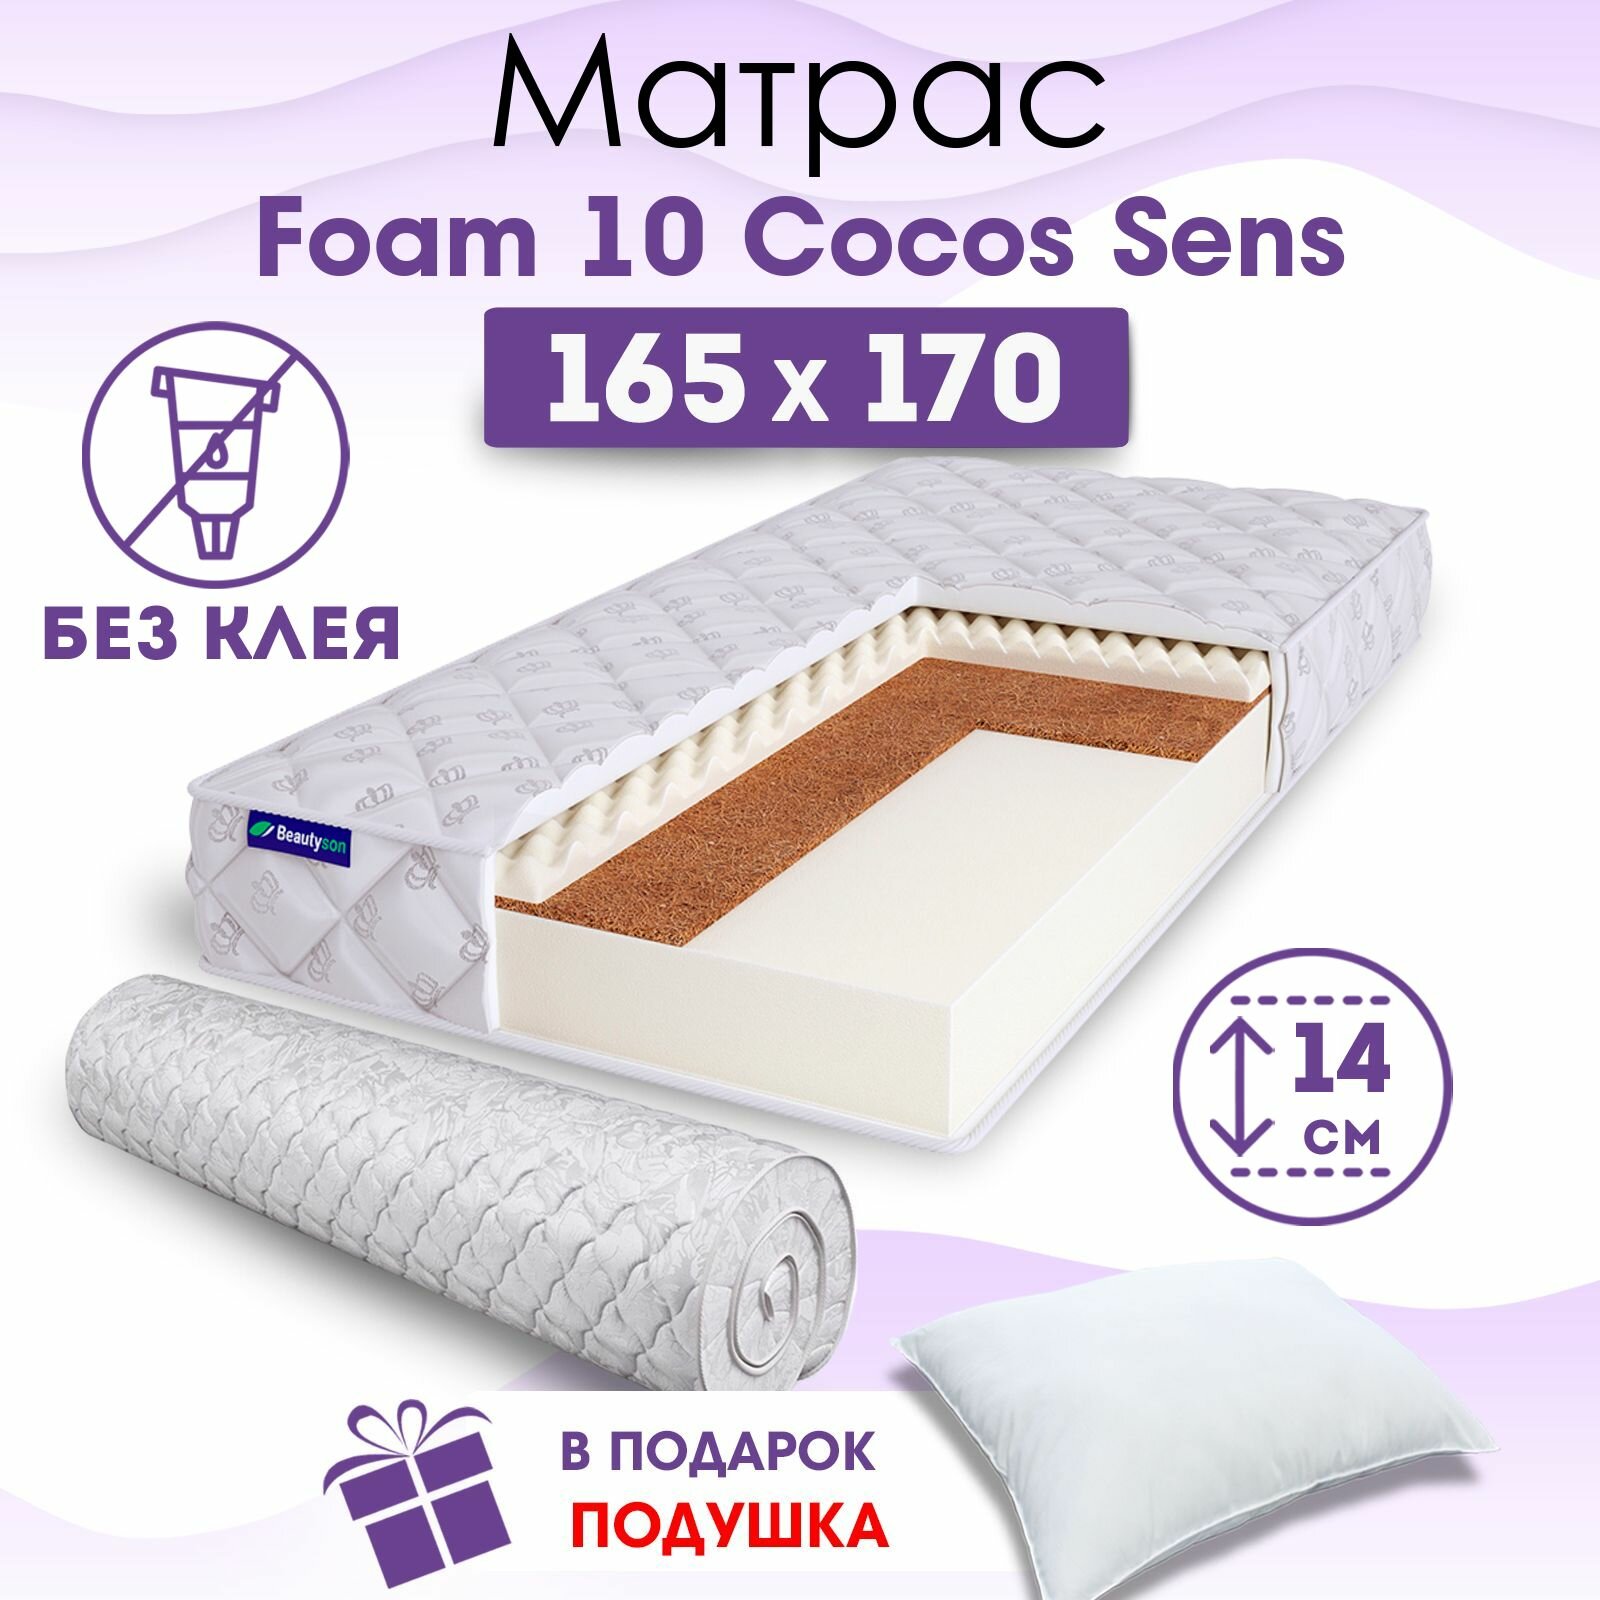 Ортопедический матрас Beautyson Foam 10 Cocos Sens без клея, 165х170, 14 см, беспружинный, двухспальный, на кровать, для дивана, умеренно мягкий